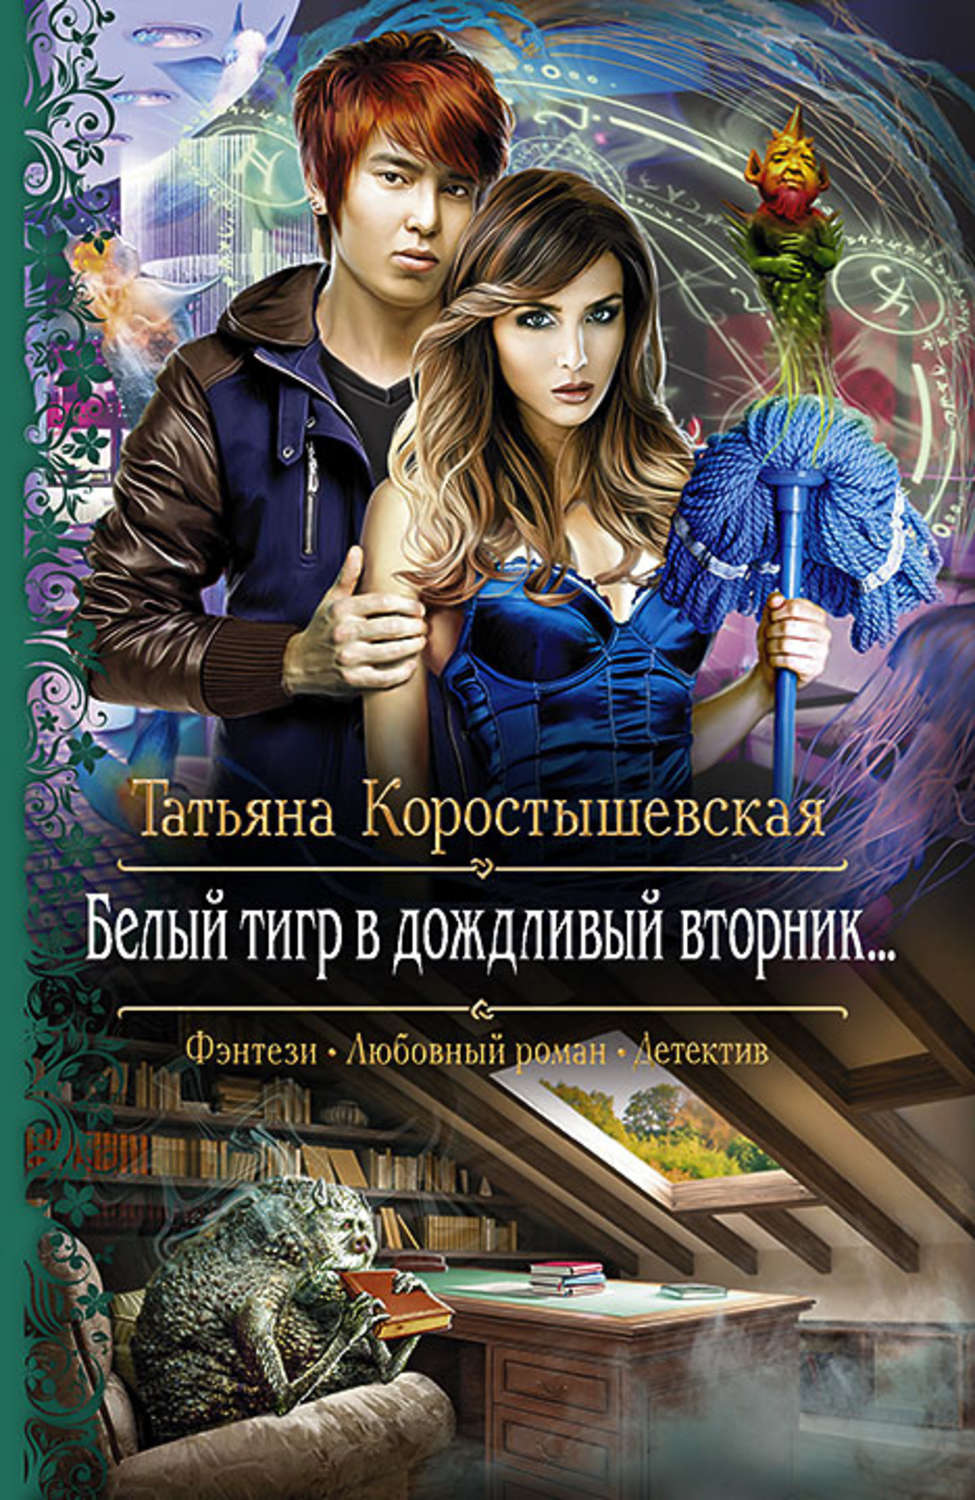 Скачать бесплатно книги коростышевской